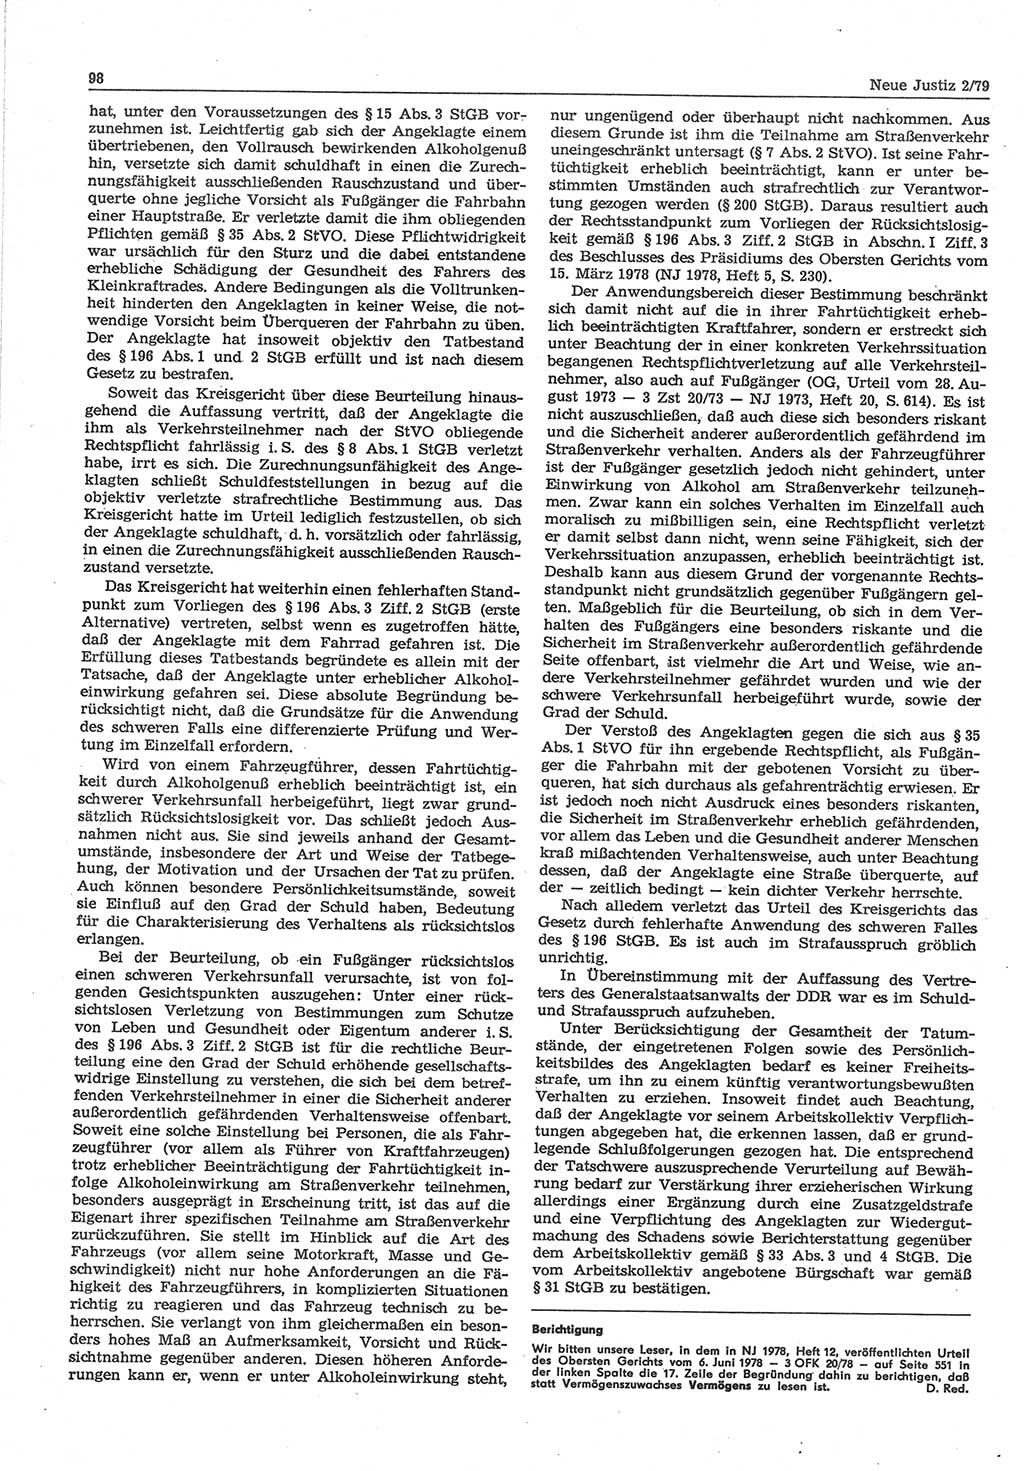 Neue Justiz (NJ), Zeitschrift für sozialistisches Recht und Gesetzlichkeit [Deutsche Demokratische Republik (DDR)], 33. Jahrgang 1979, Seite 98 (NJ DDR 1979, S. 98)